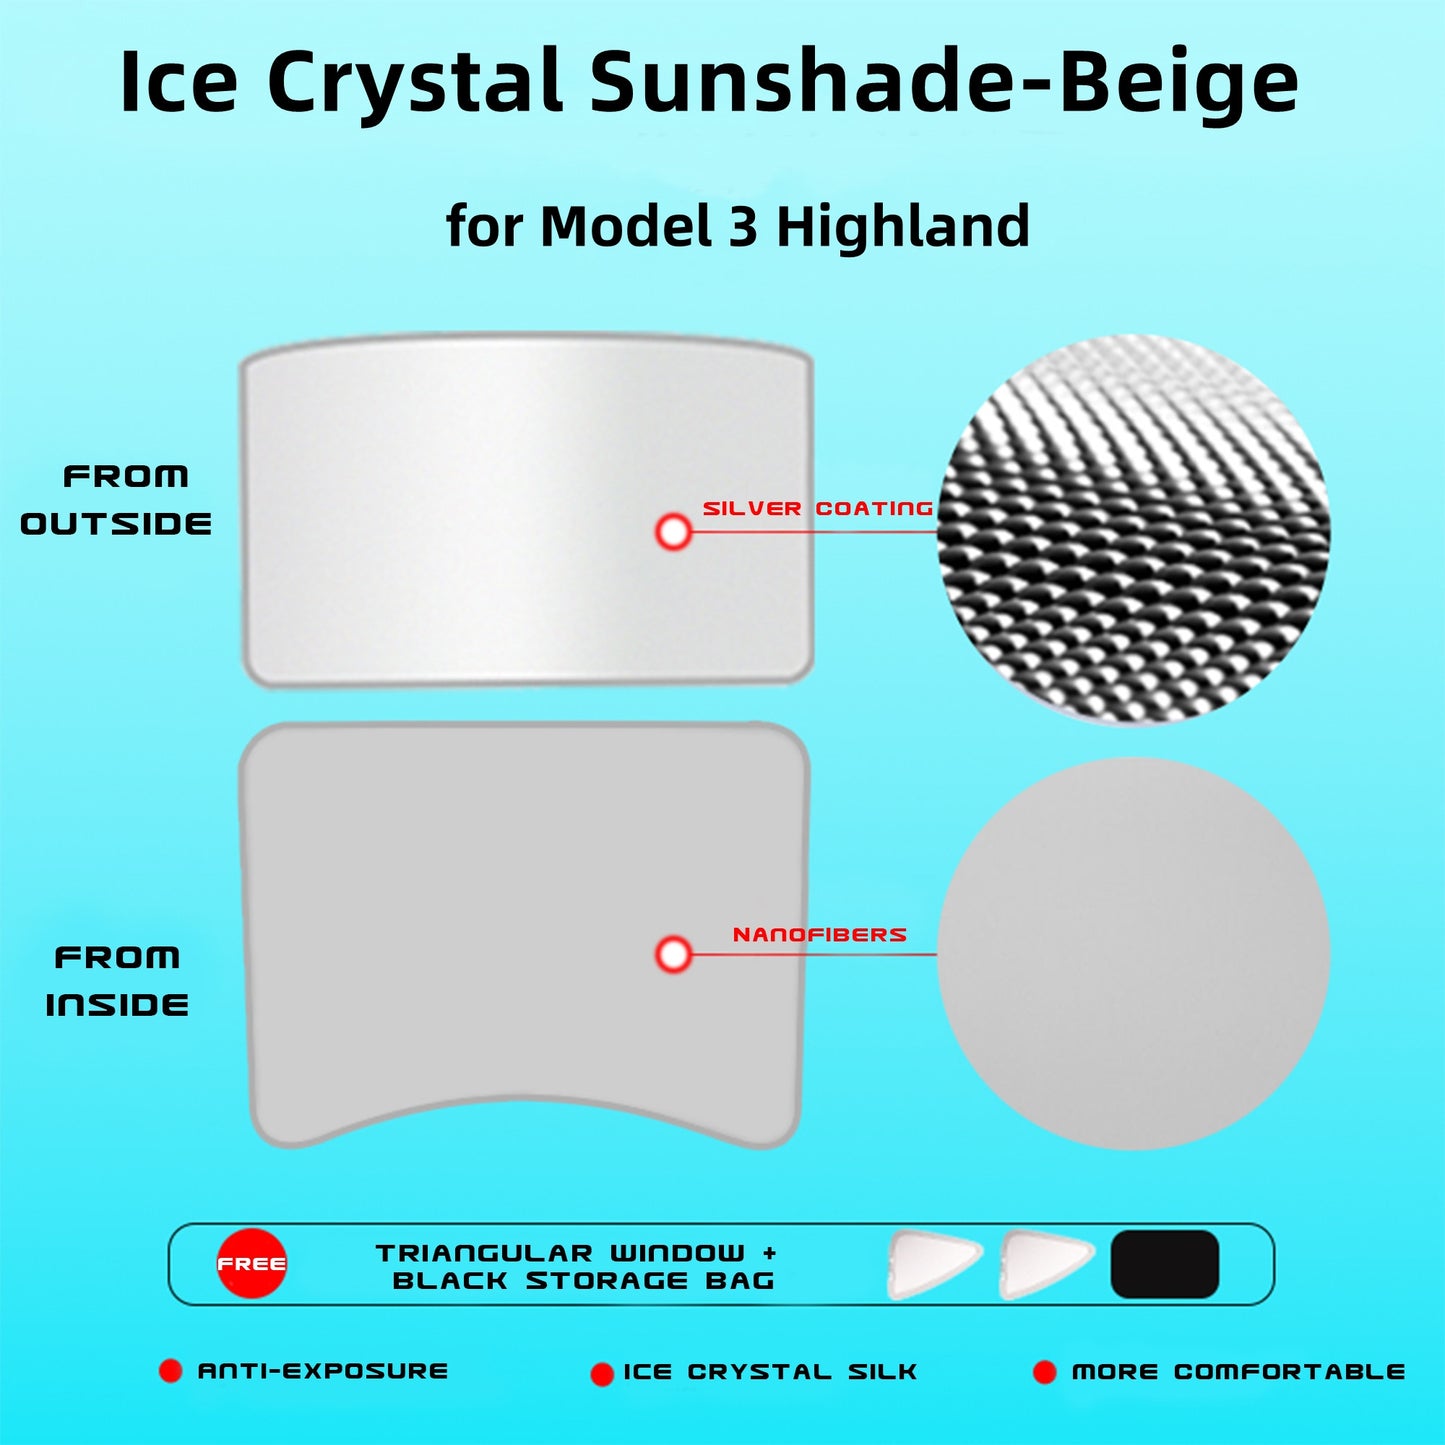 Parasoles para techo corredizo con cubierta de película de aislamiento térmico/UV, juego de parasoles plegables de cristal de hielo para modelo 3 y modelo 3 Highland